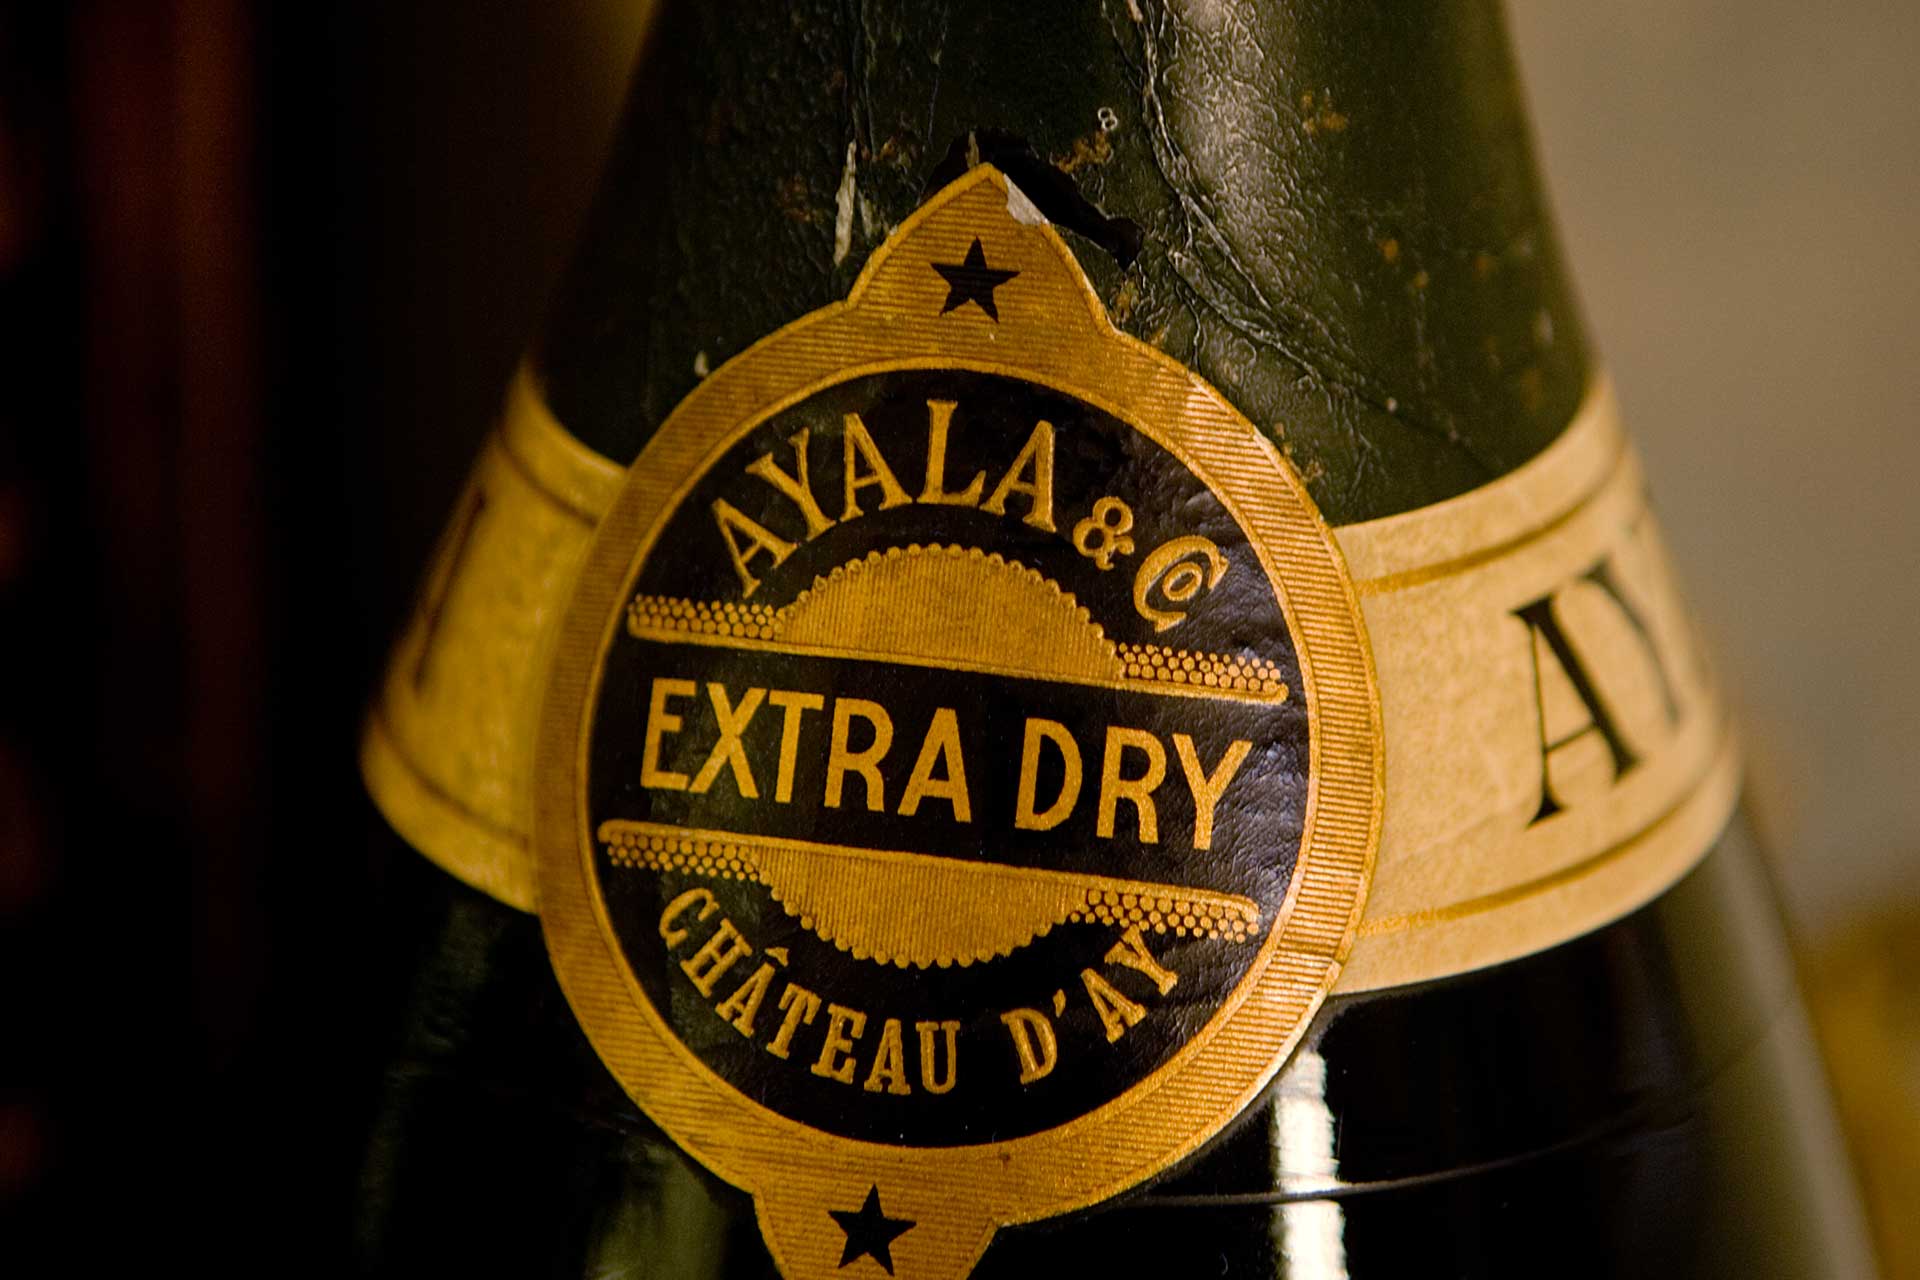 Ayala Champagne History